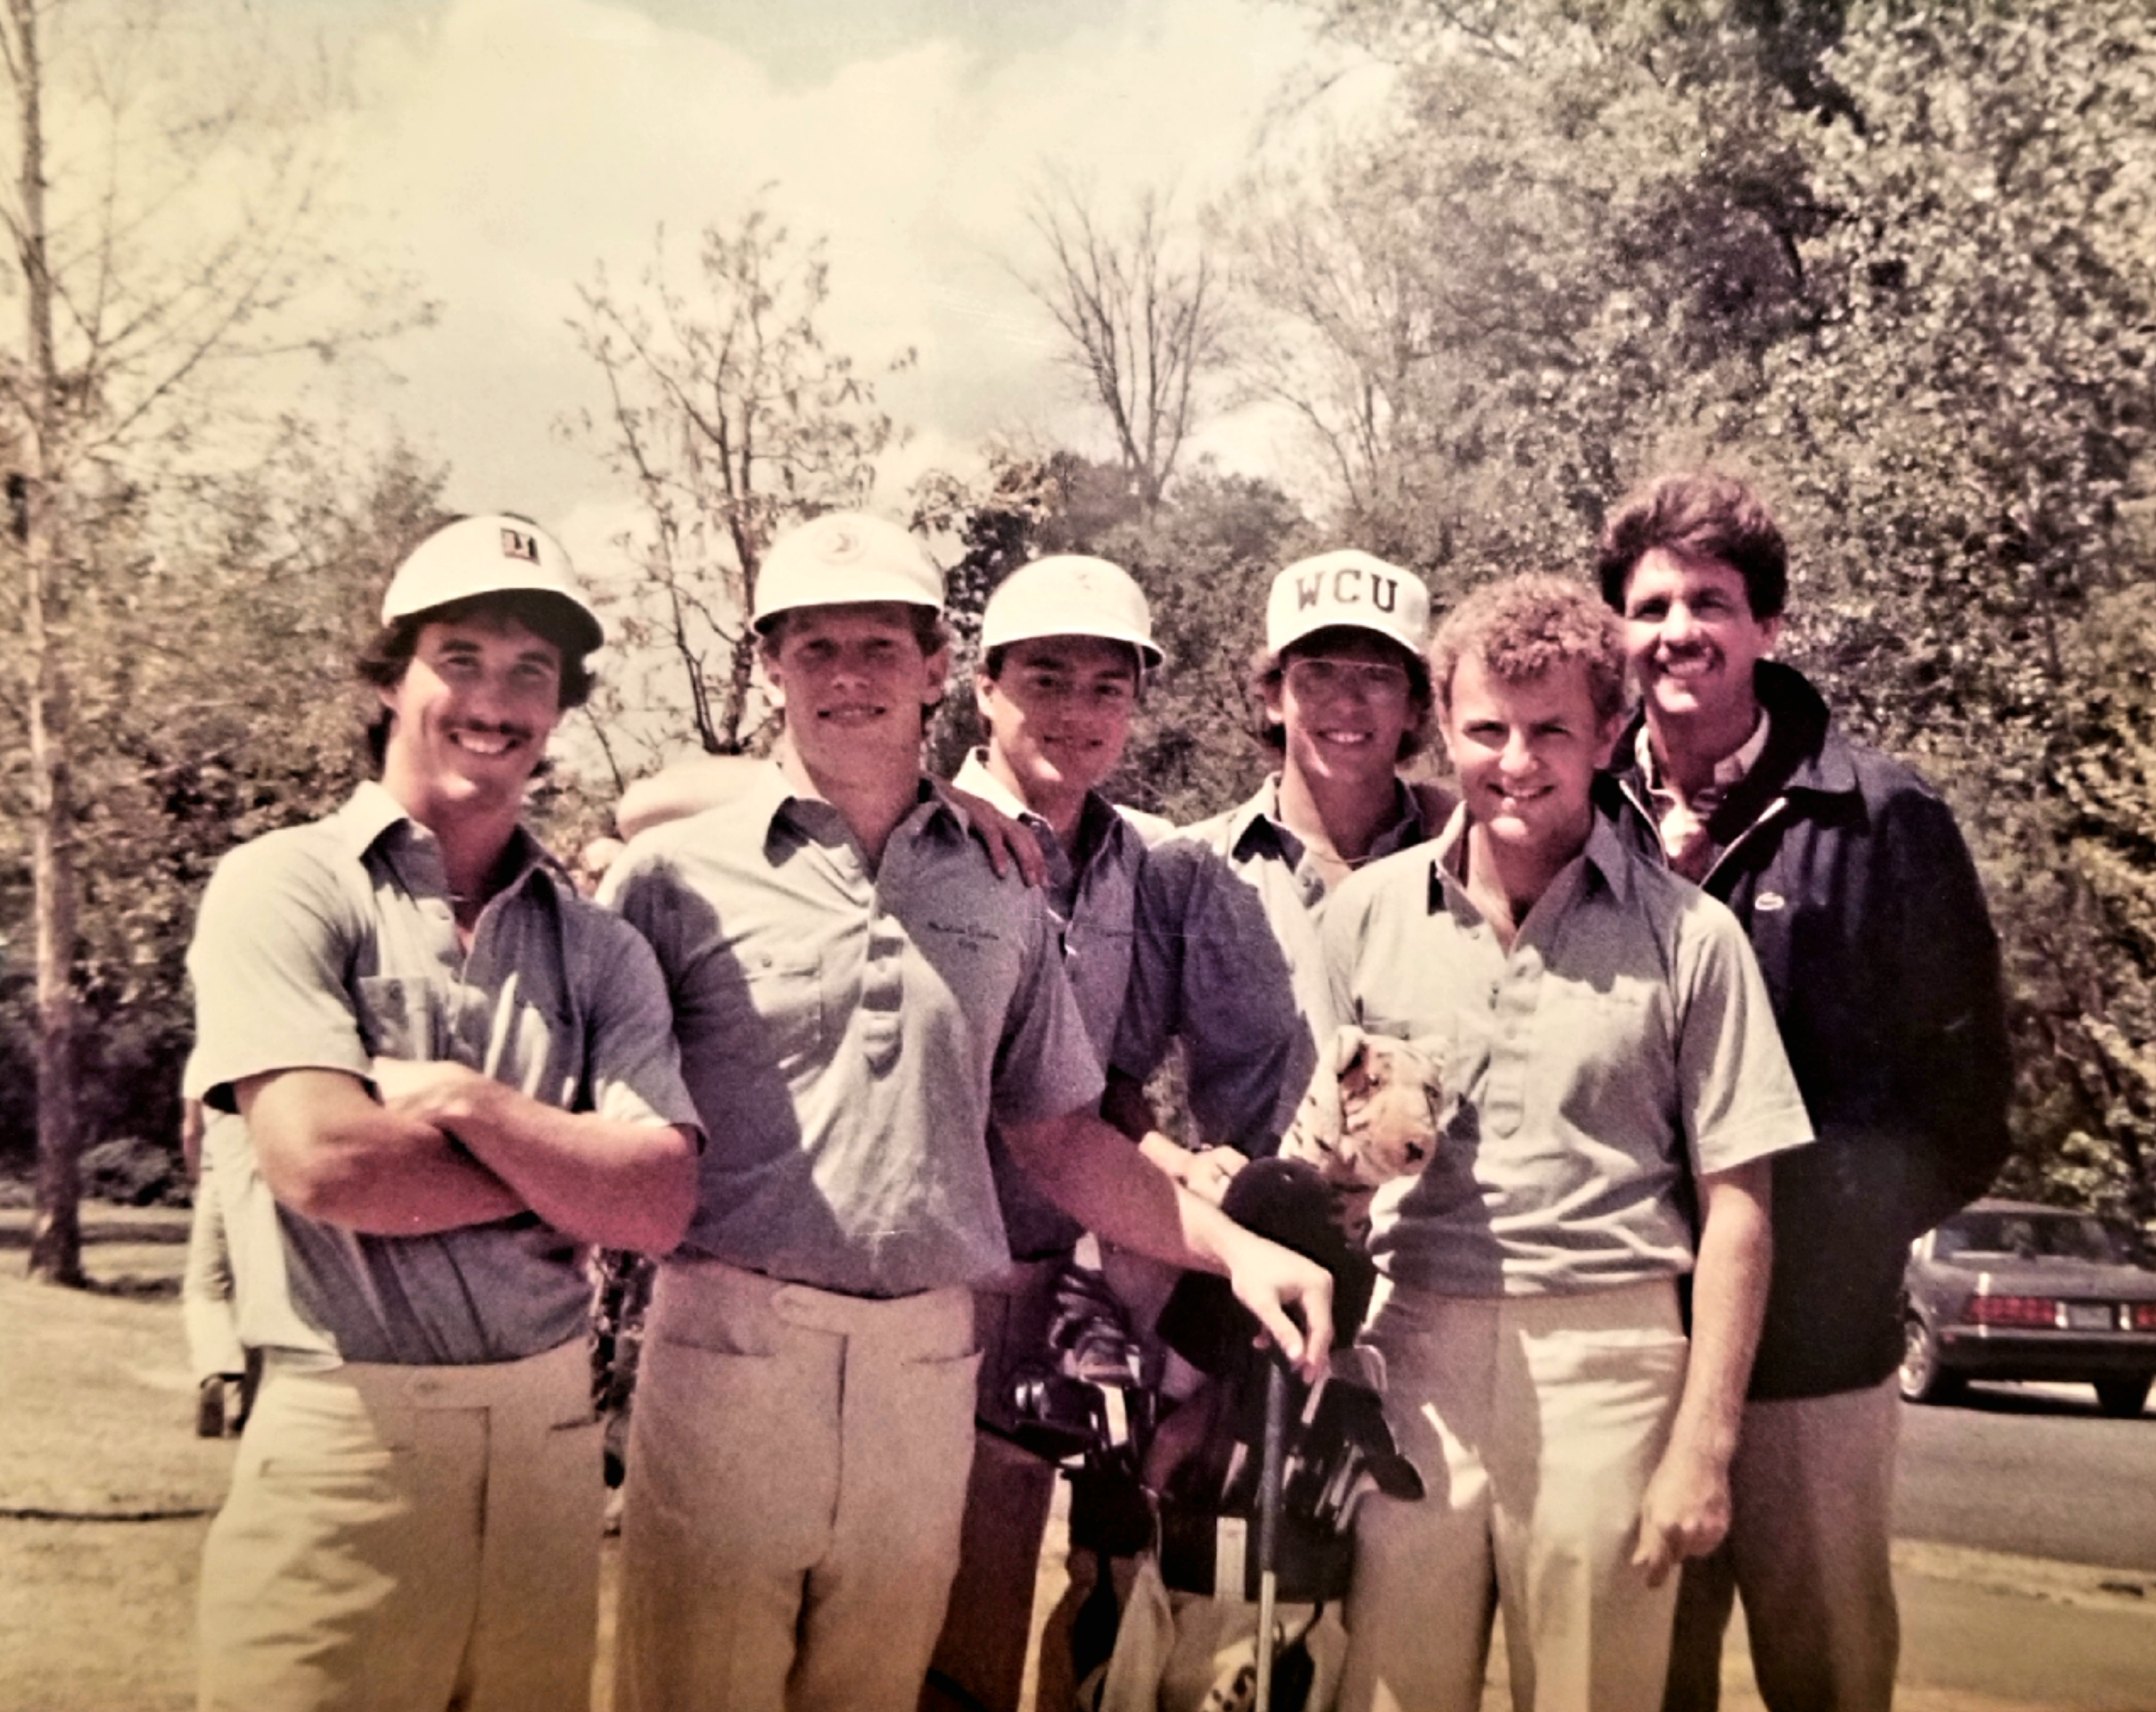 Brett Miller and the 1986 golf team